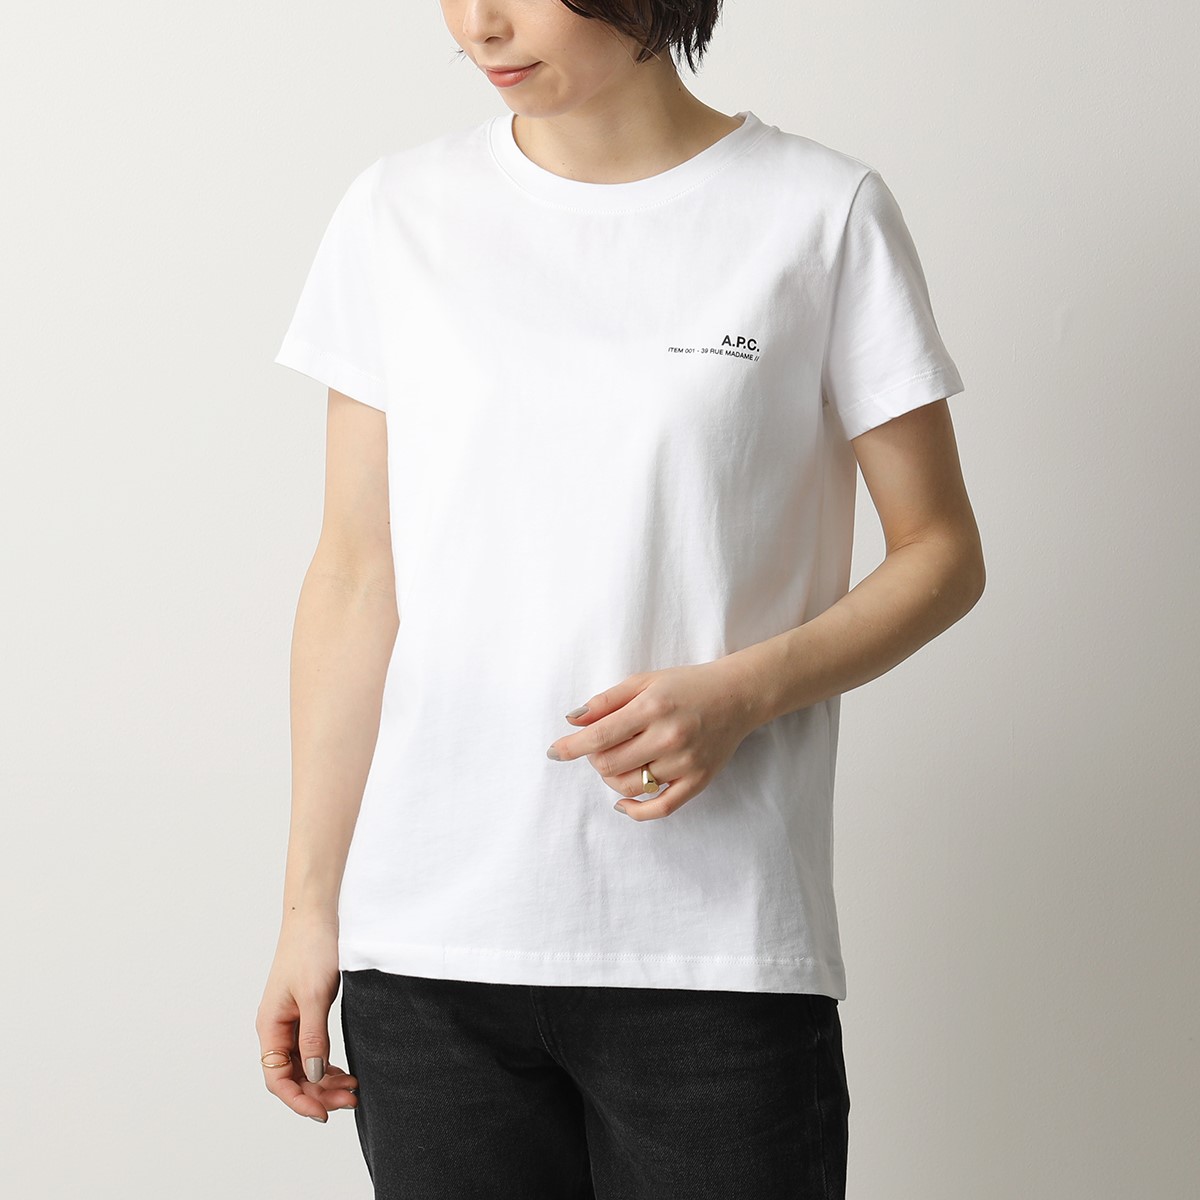 APC A.P.C. アーペーセー 半袖 Tシャツ COFBT F26012 item レディース